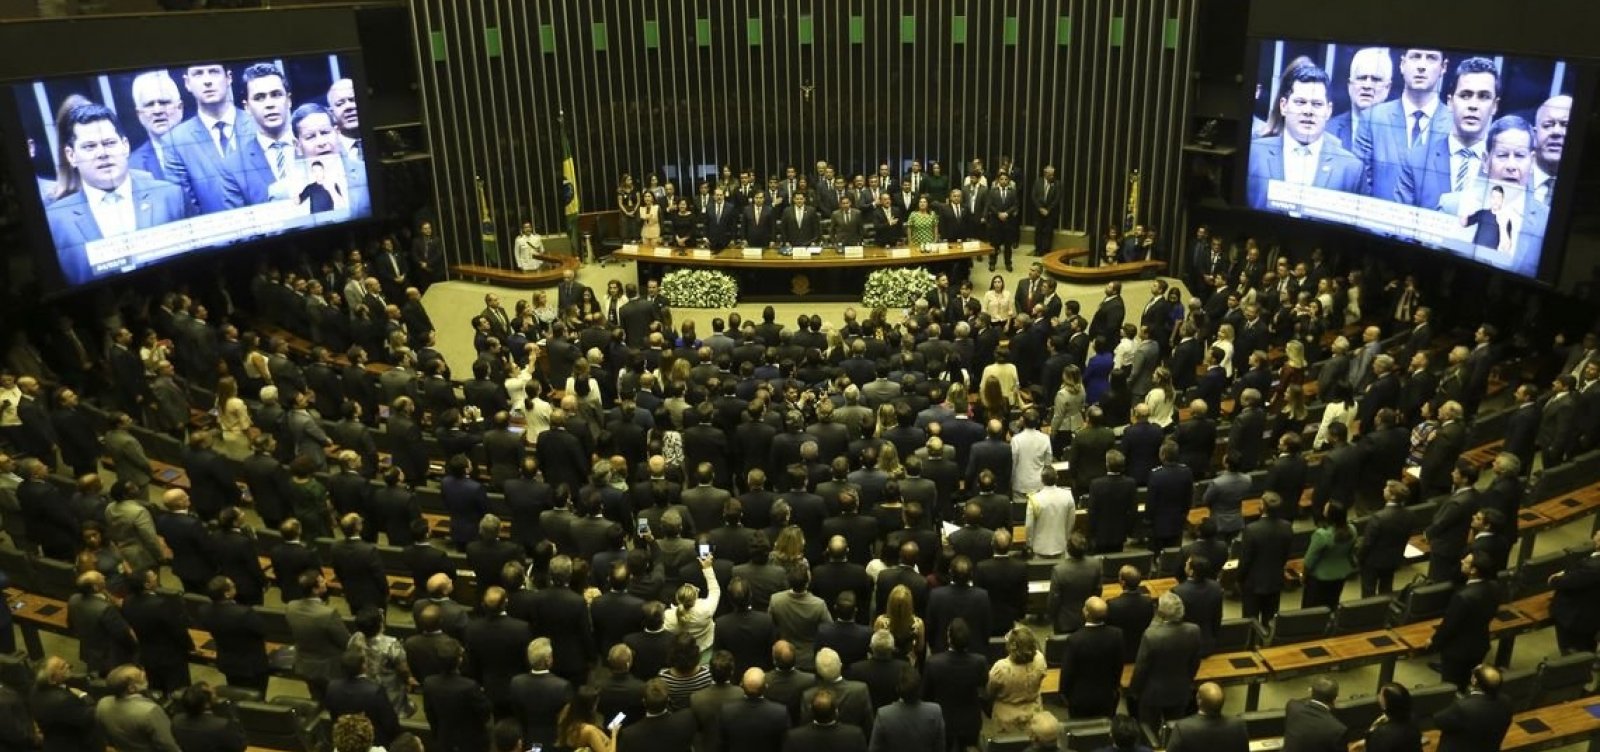 Pressionado, governo libera R$ 1 bilhão em emendas parlamentares